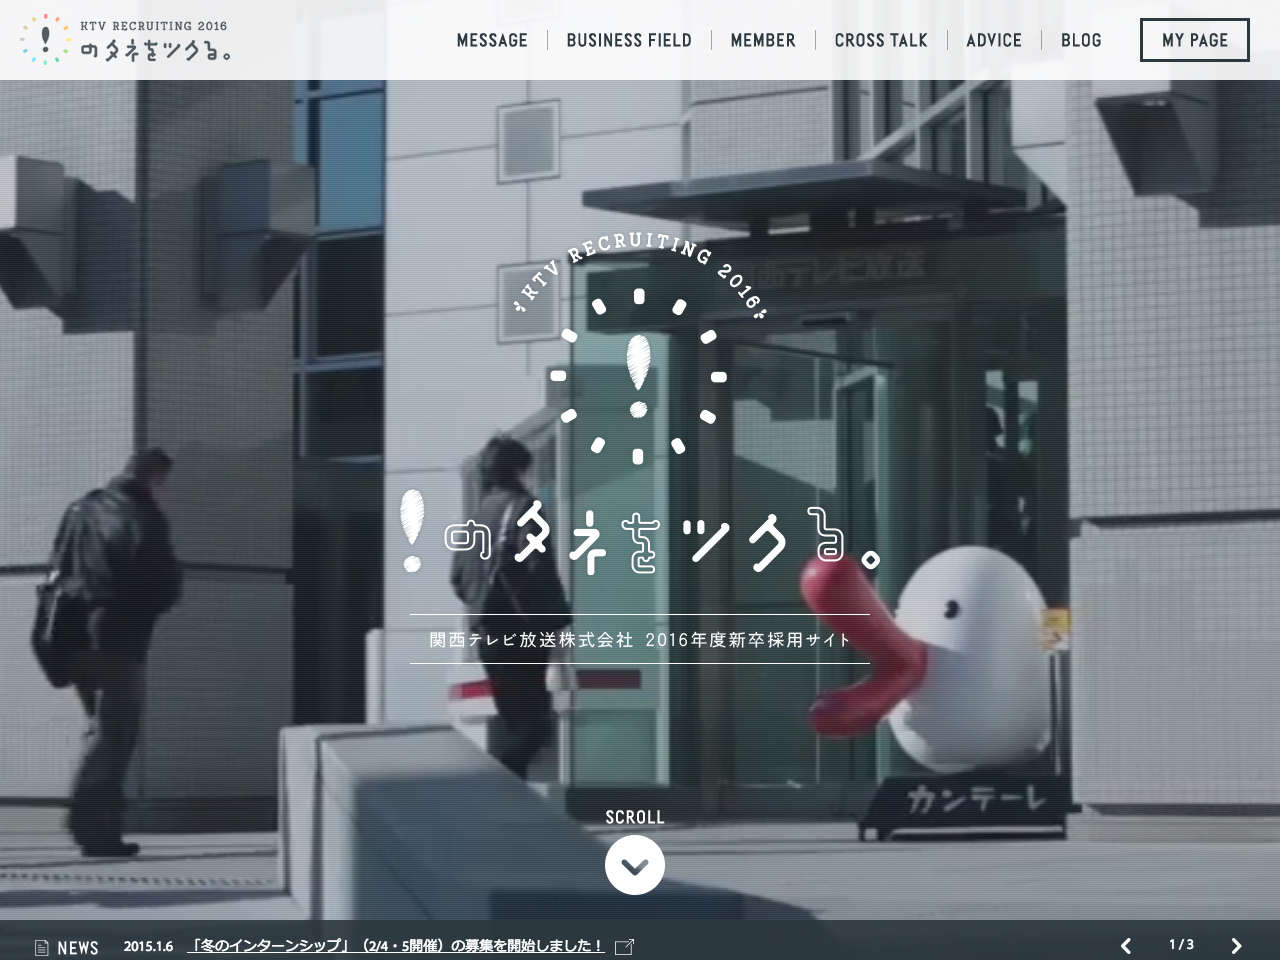 関西テレビ RECRUIT 2016 「！のタネをツクる。」 | カンテレ採用 – 関西テレビ放送